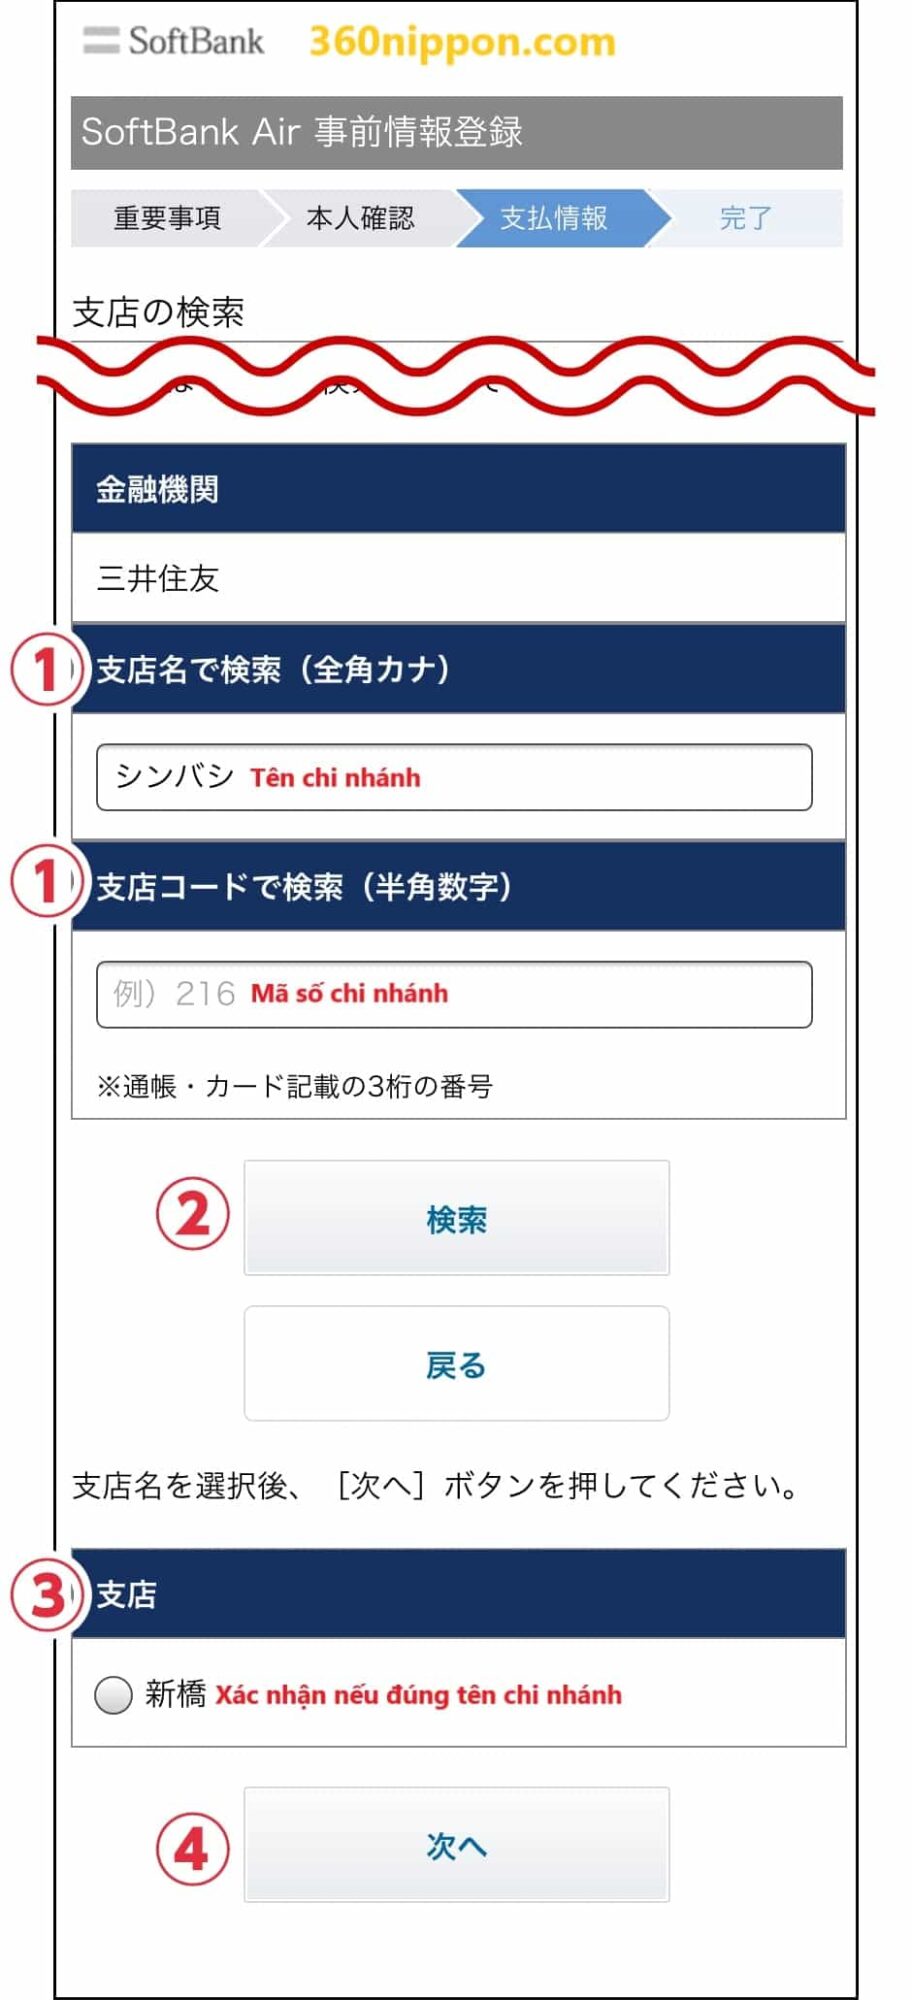 Hướng dẫn đăng ký wifi cố định softbank ở Nhật 72